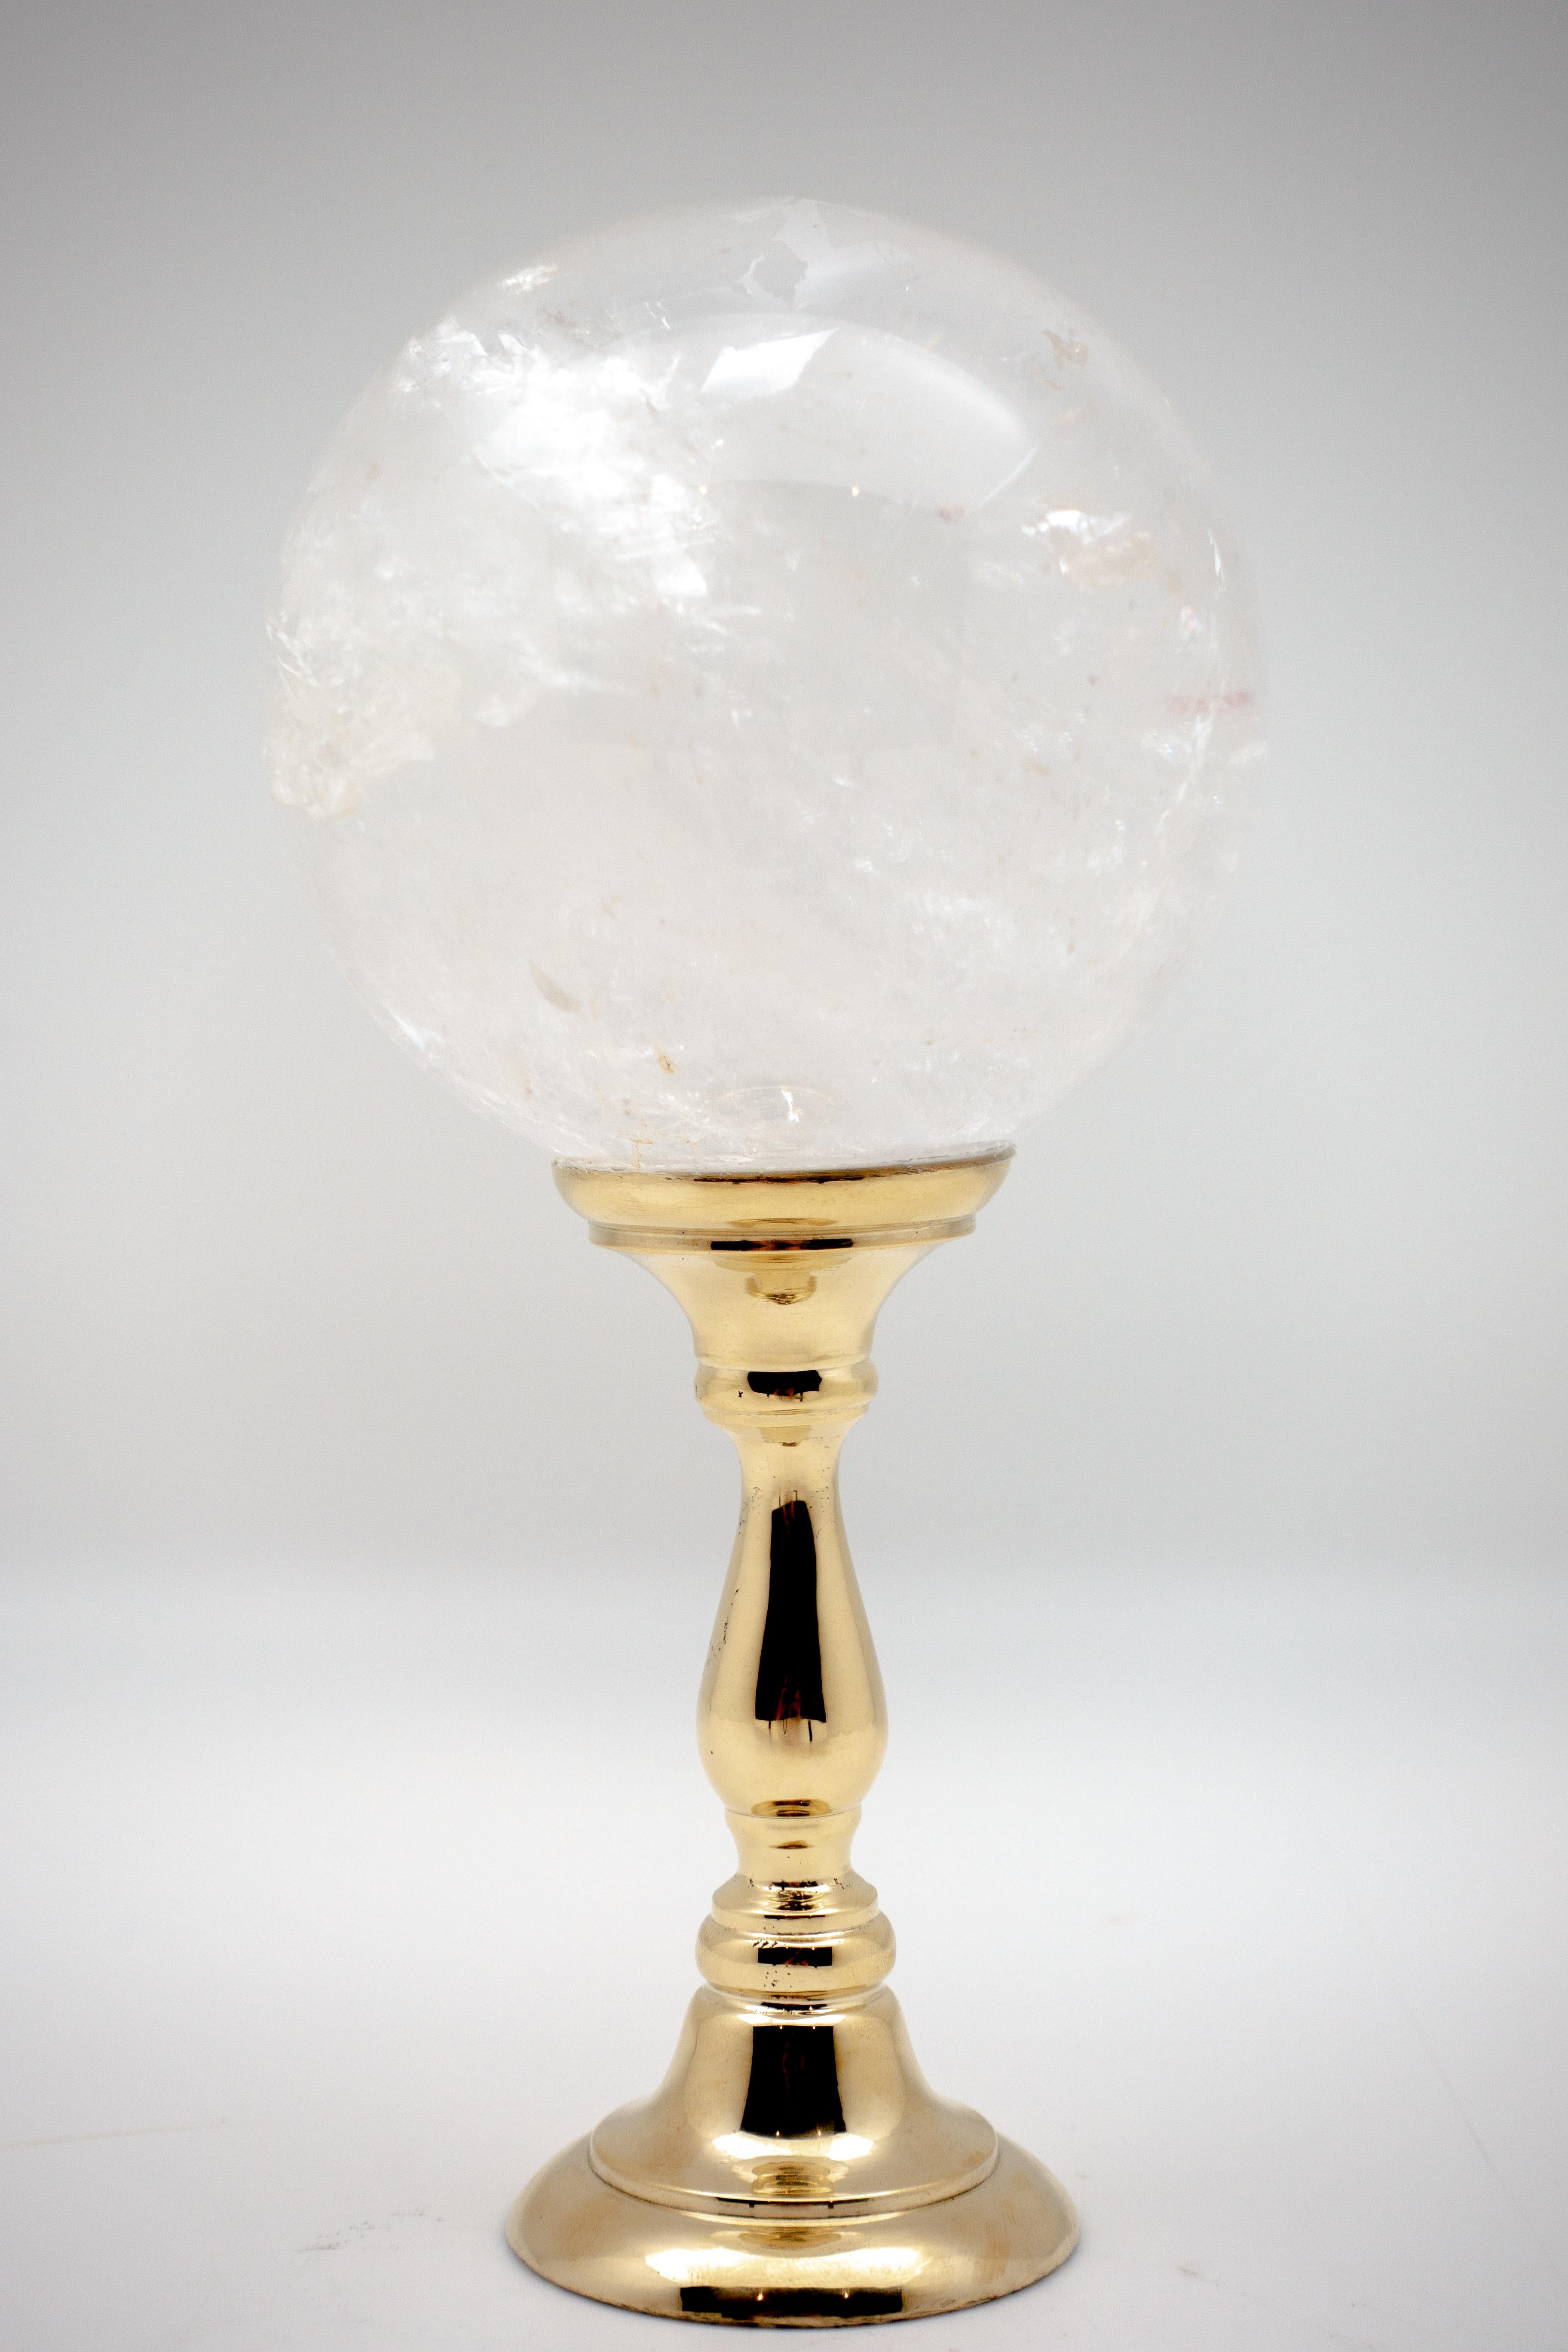 Sphère en cristal de roche montée sur un support en laiton. Le cristal de roche, une forme de quartz, est utilisé dans les bijoux et les ornements depuis l'antiquité, et c'est la forme la plus pure de quartz découverte. Mesures : 3.5